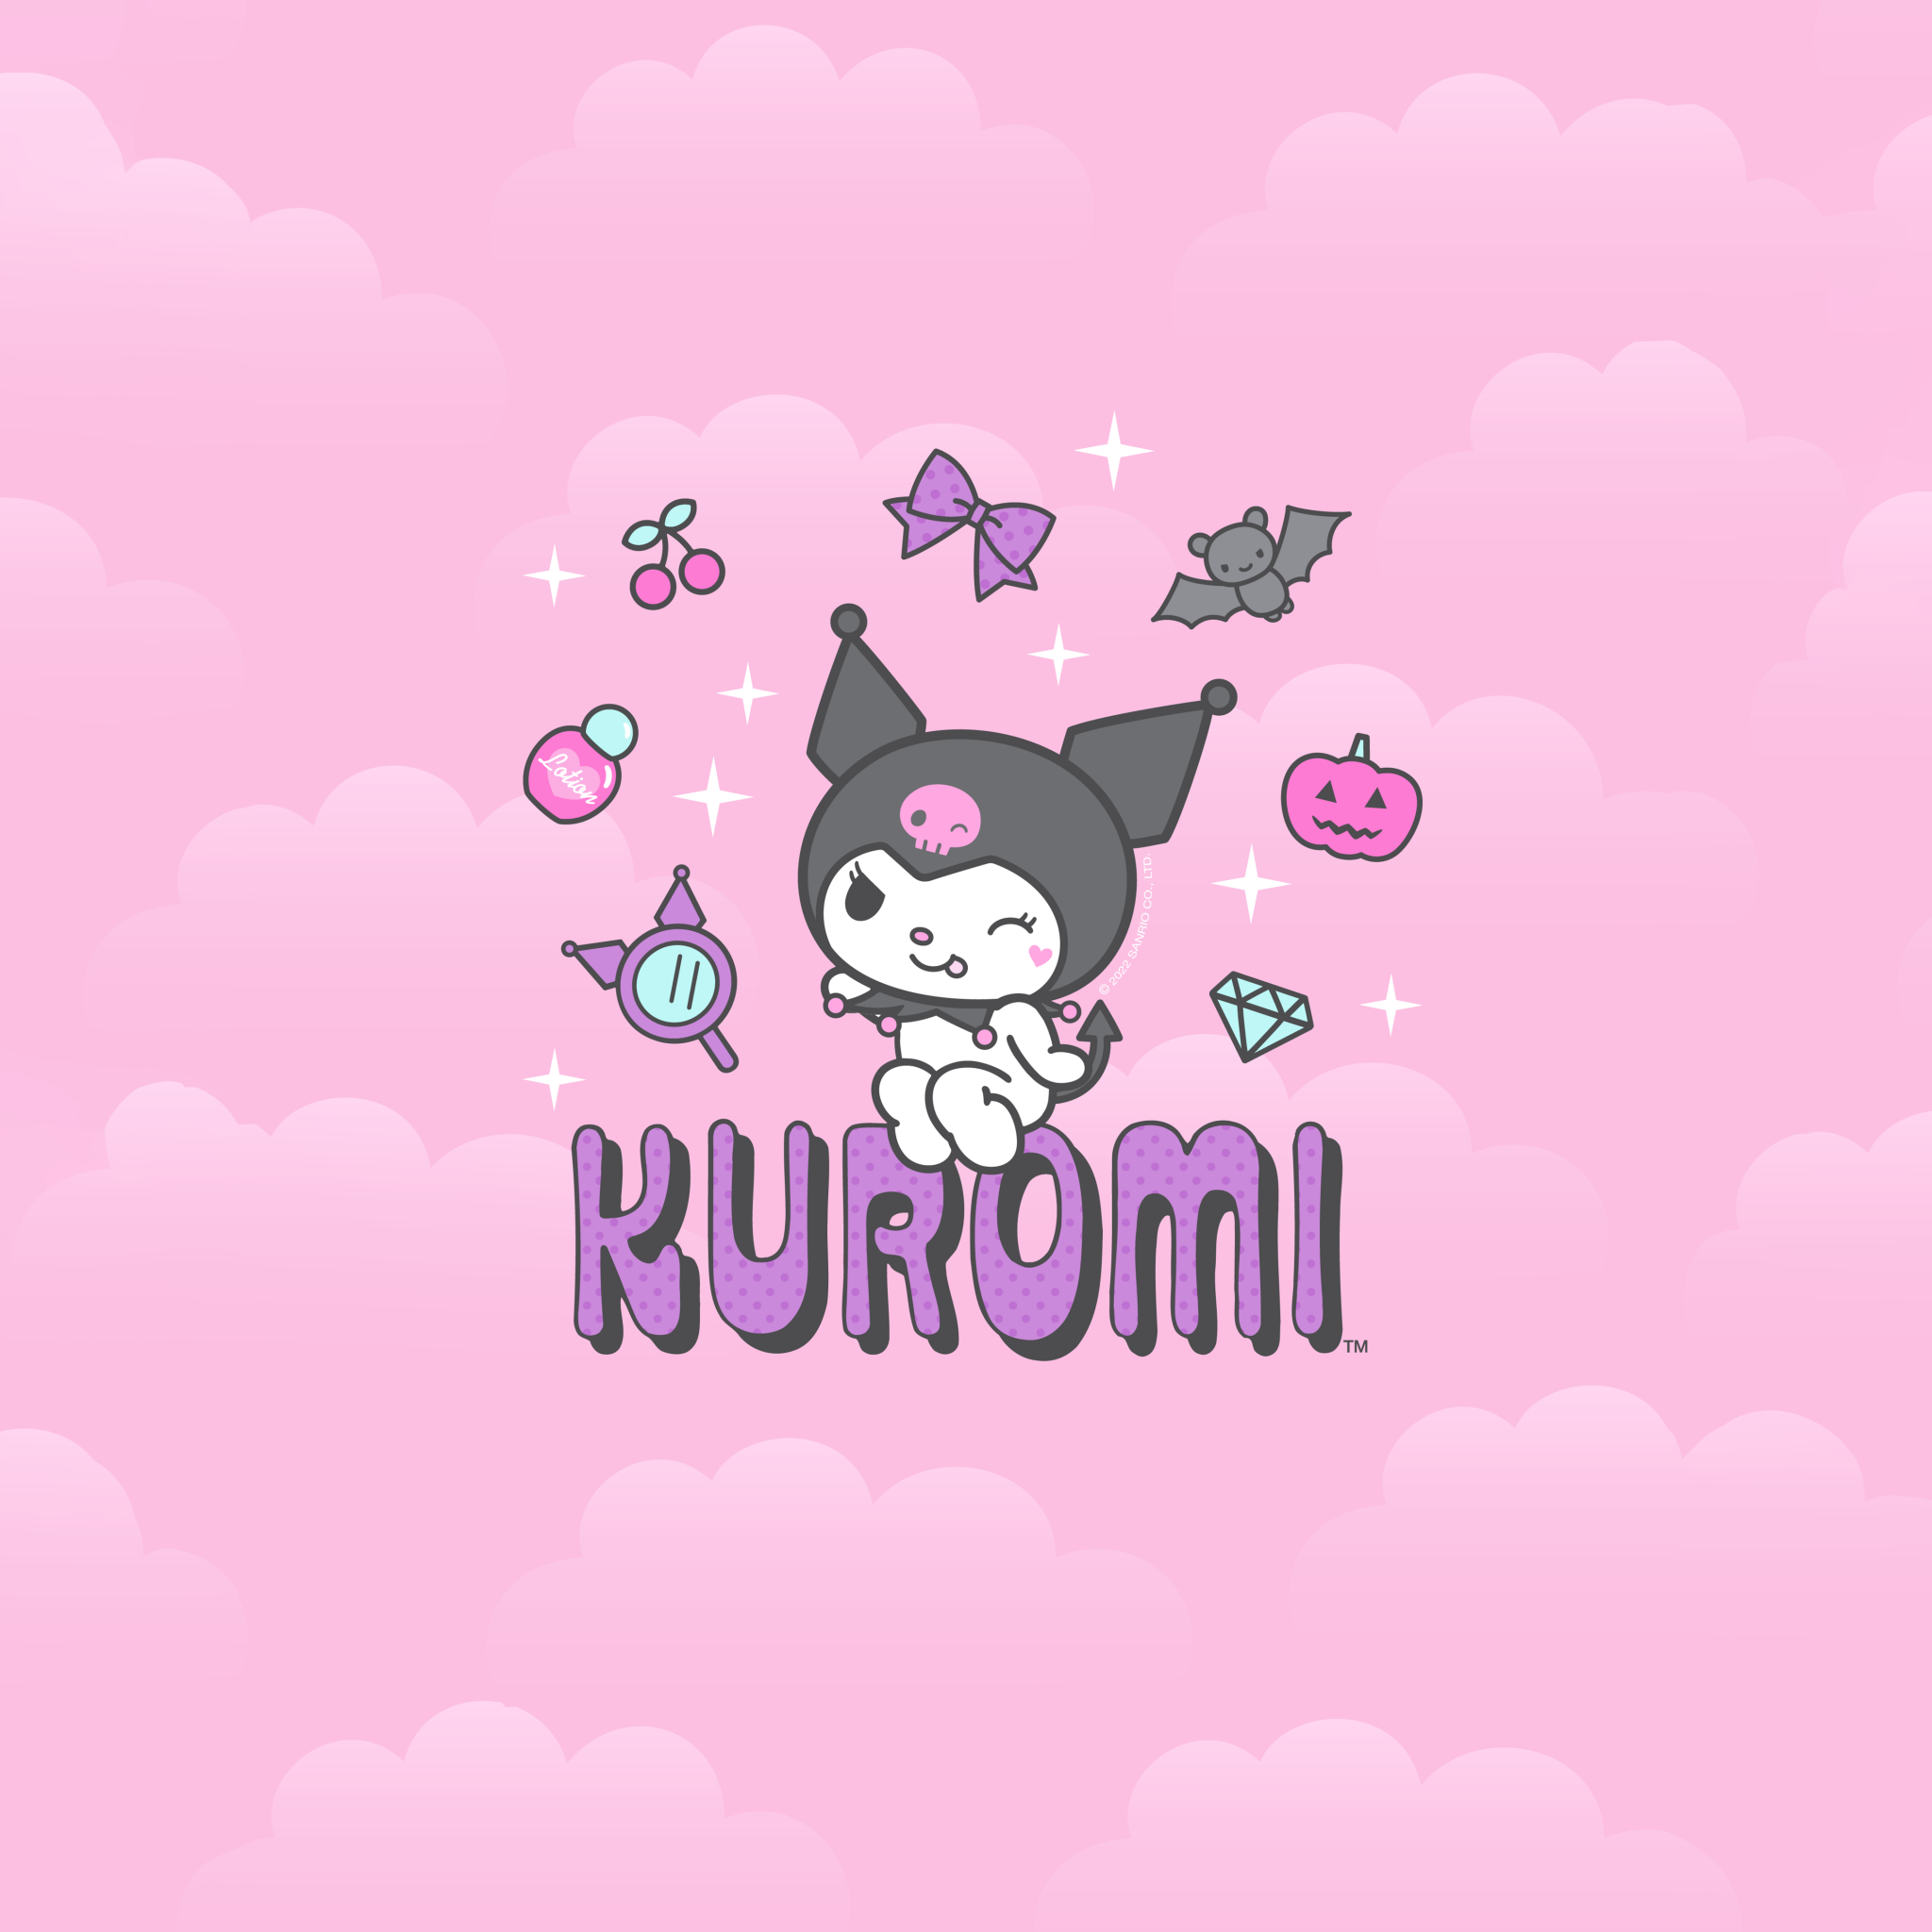 Cập nhật với hơn 83+ kuromi is what animal cute nhất - Co-Created English